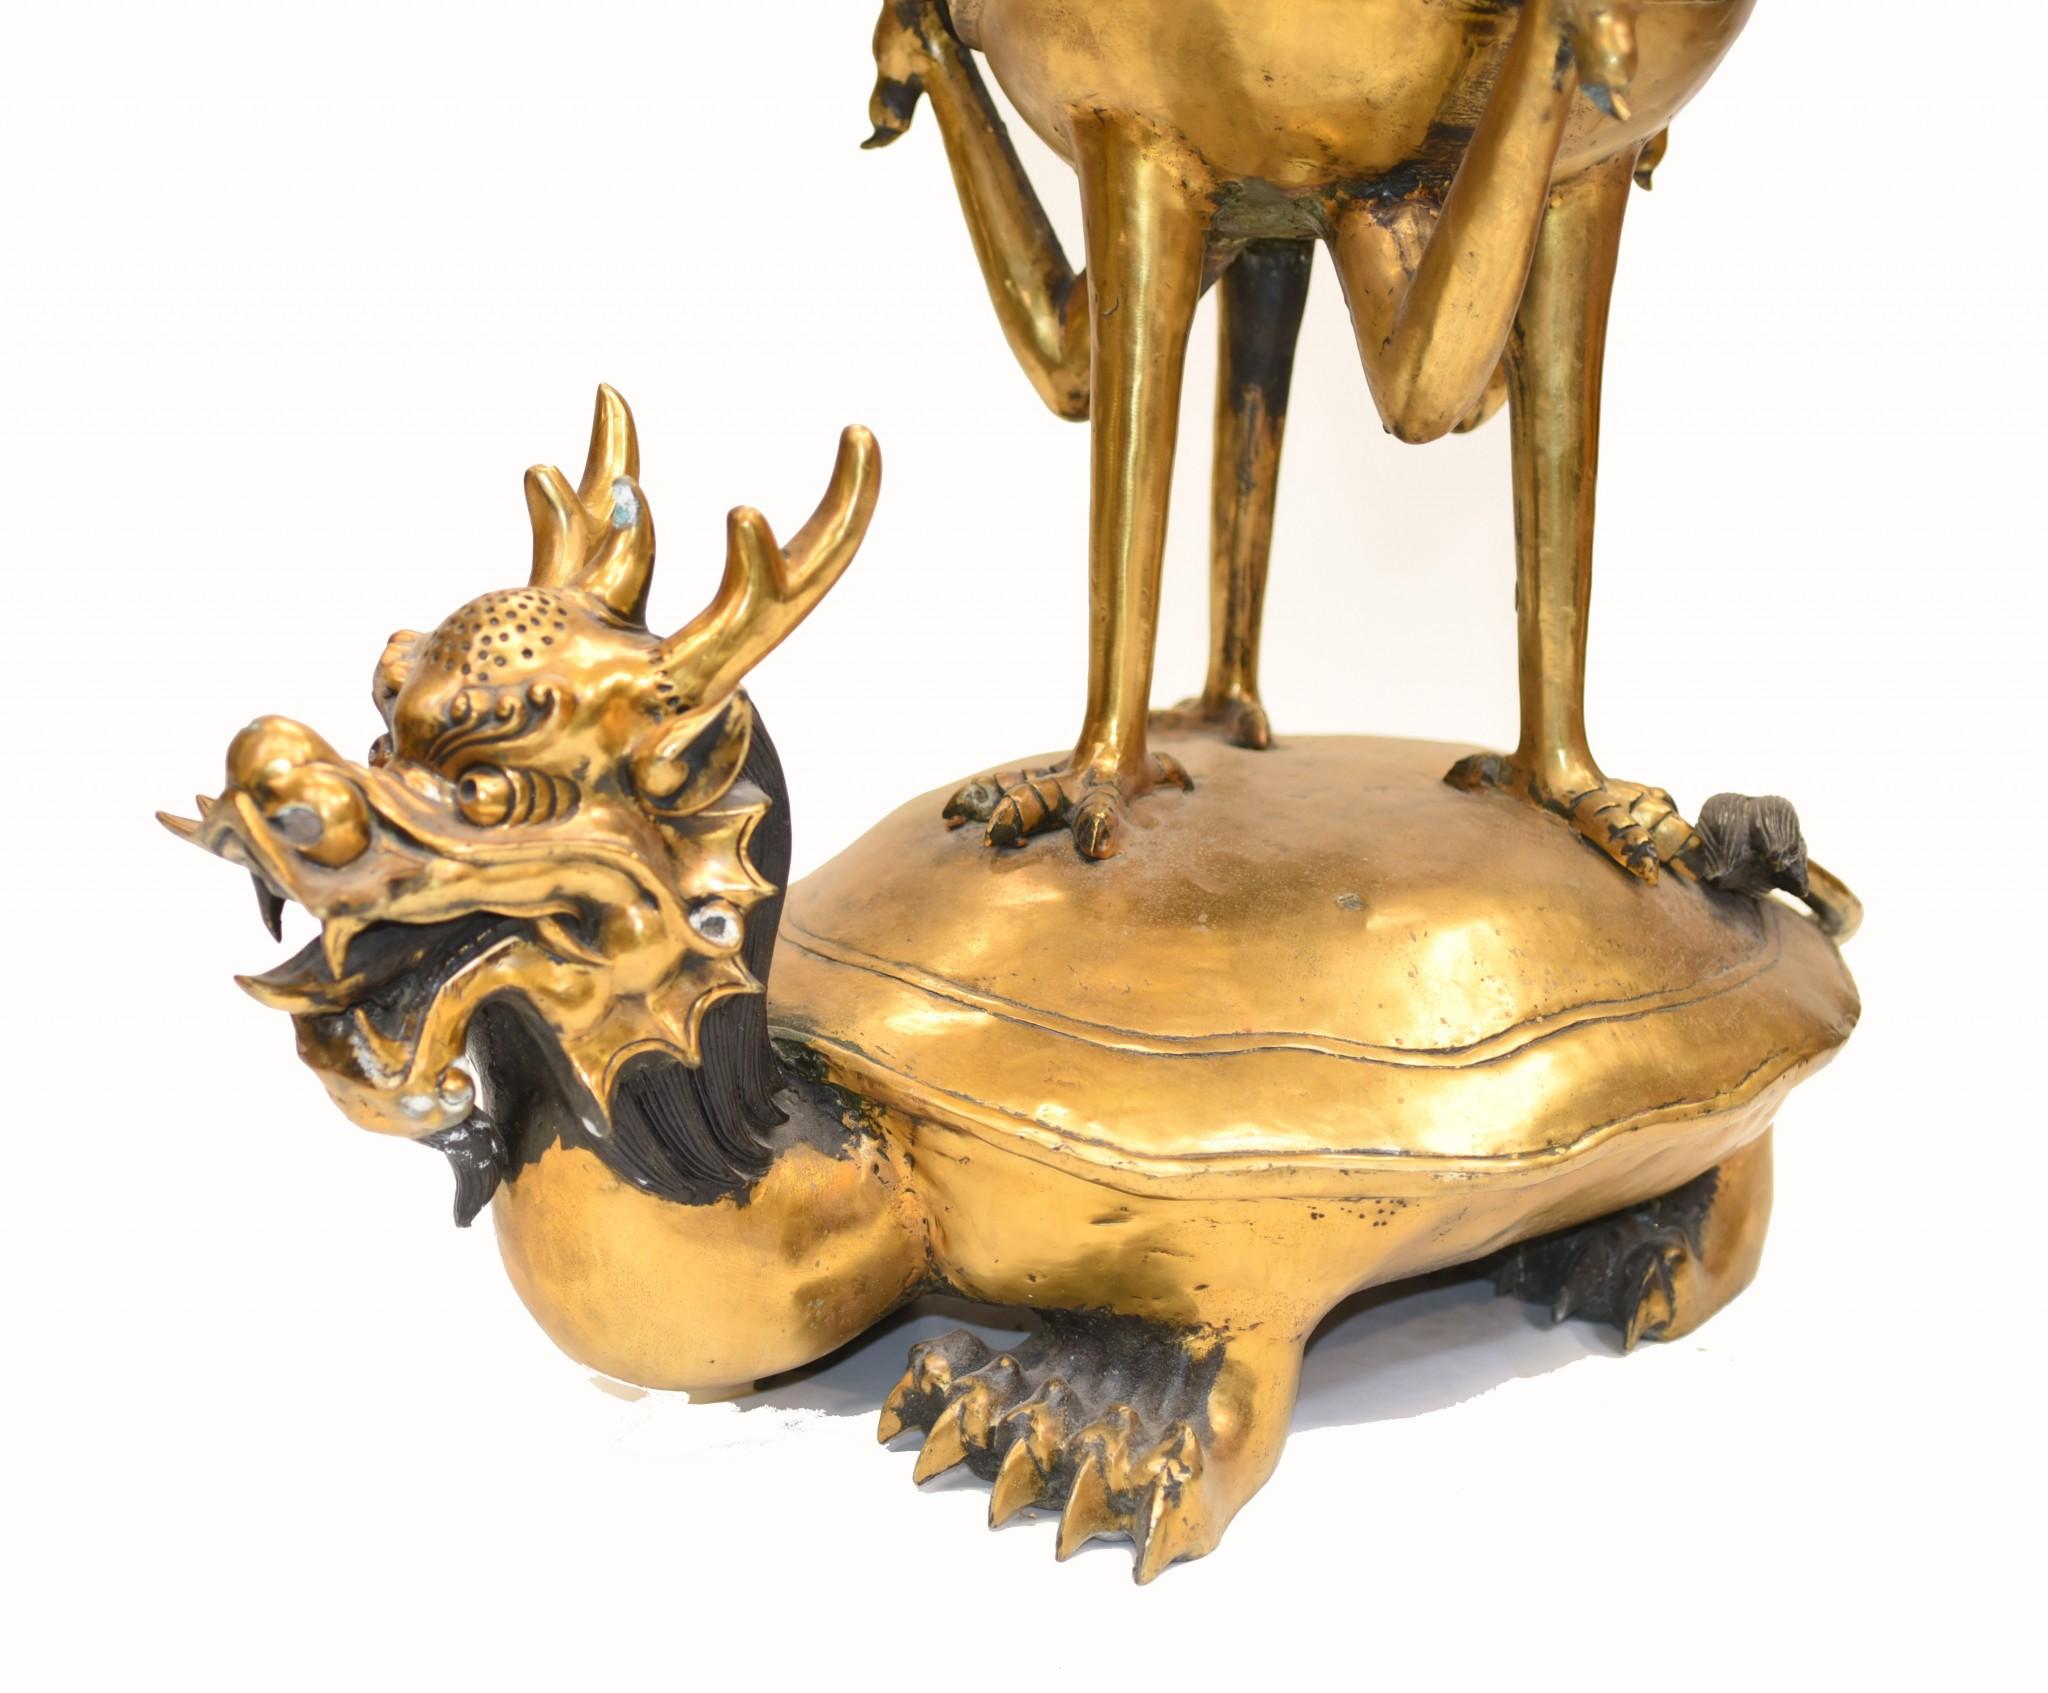 - Brûleur d'encens excentrique en bronze pour temple chinois
- En forme de dragon-tortue, d'où jaillissent les grues.
- Bonne taille  à plus d'un mètre de haut - 96 CM
- Il aurait probablement travaillé à l'origine dans un temple
- Belle patine de